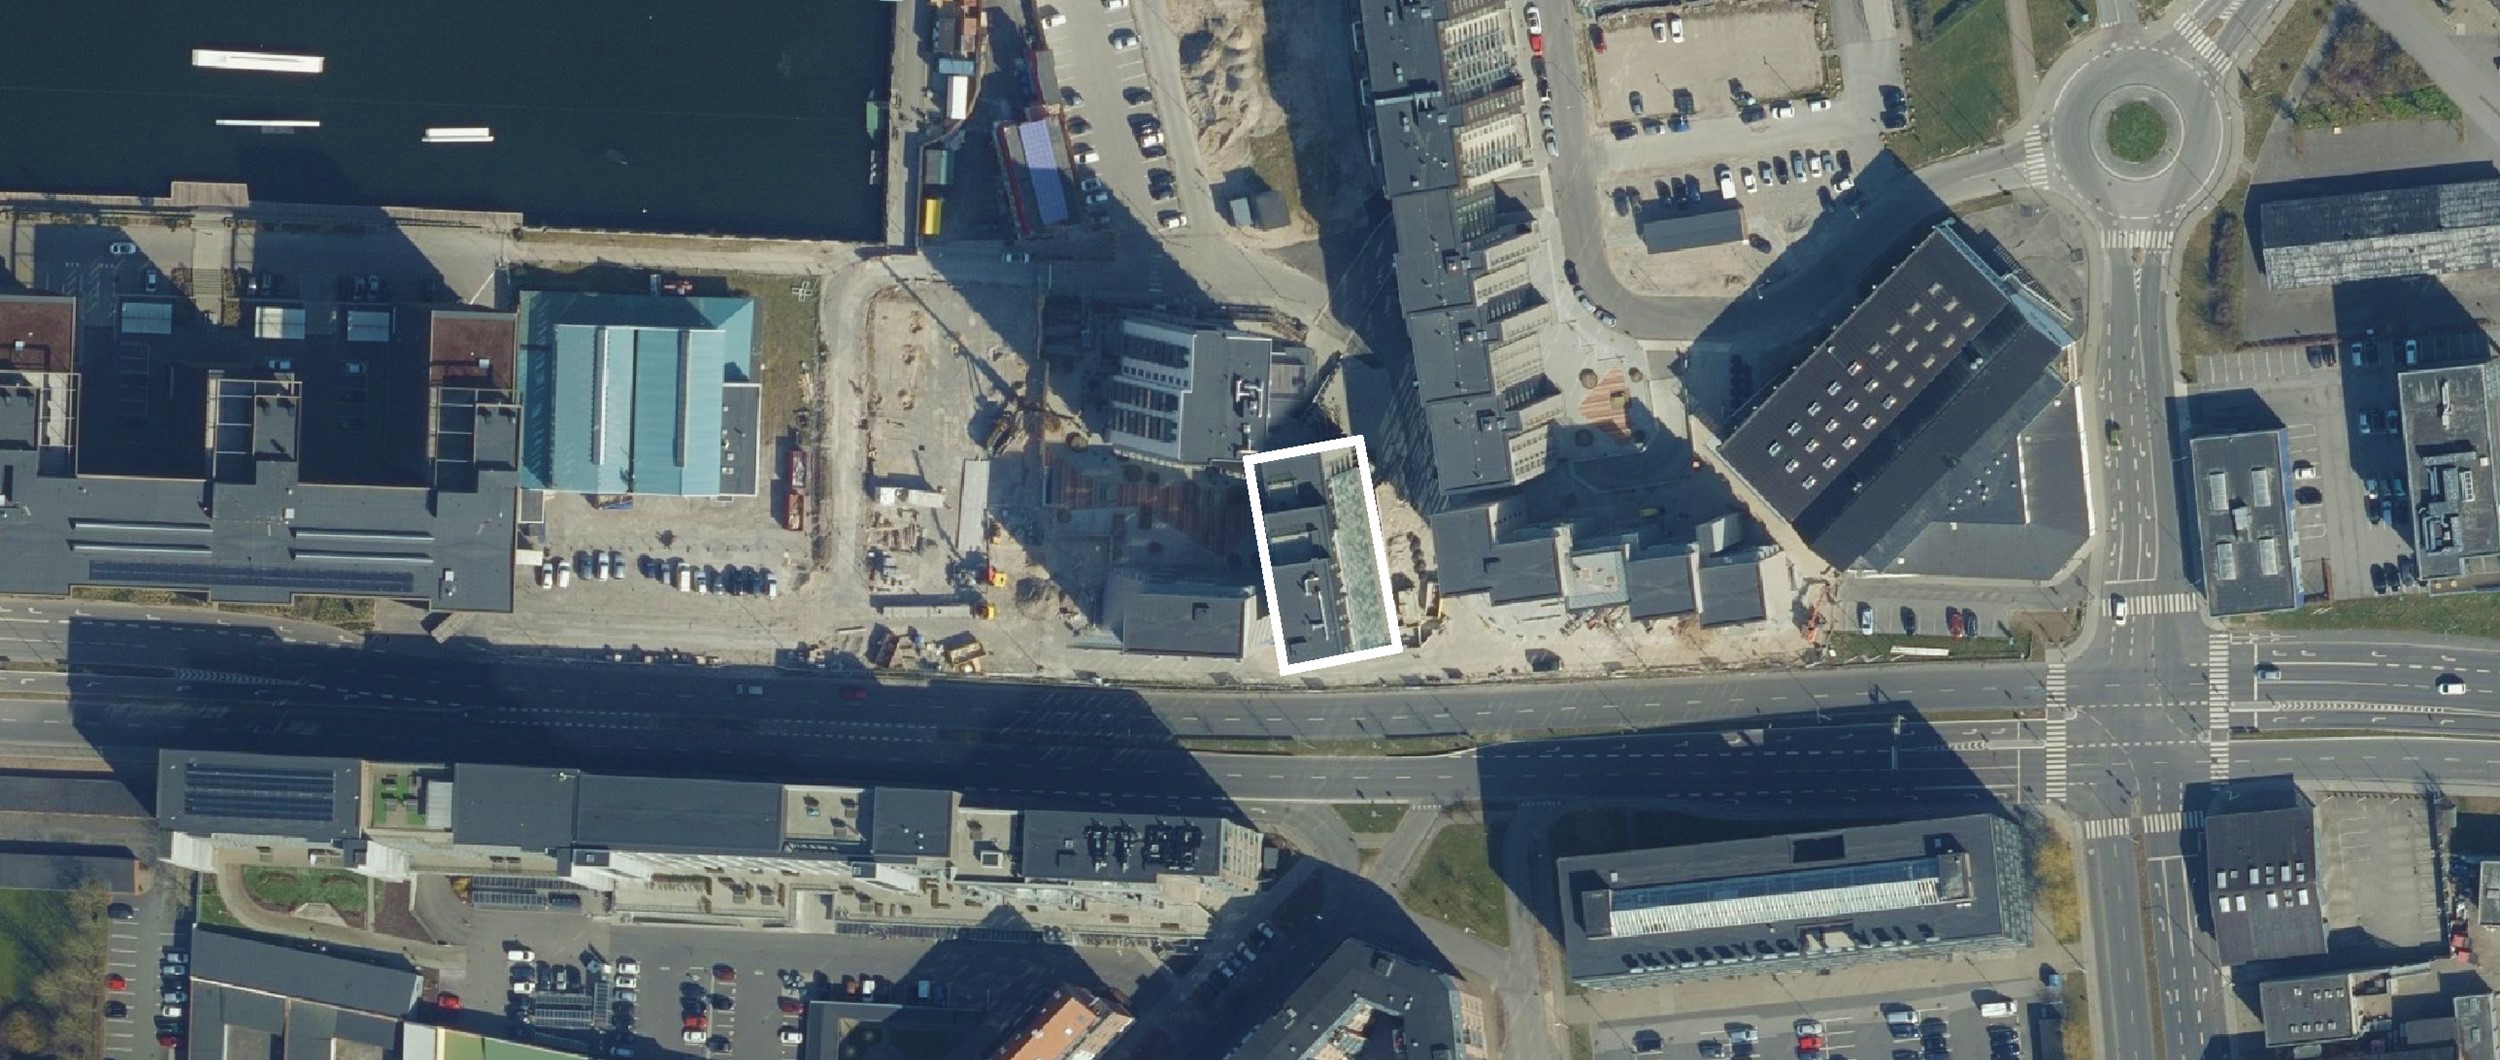 Det tidligere industriområder omkring Østre Havnebassin i Aalborg, er de sidste par år blevet omdannet til en ny bydel med forskellige typer boliger.